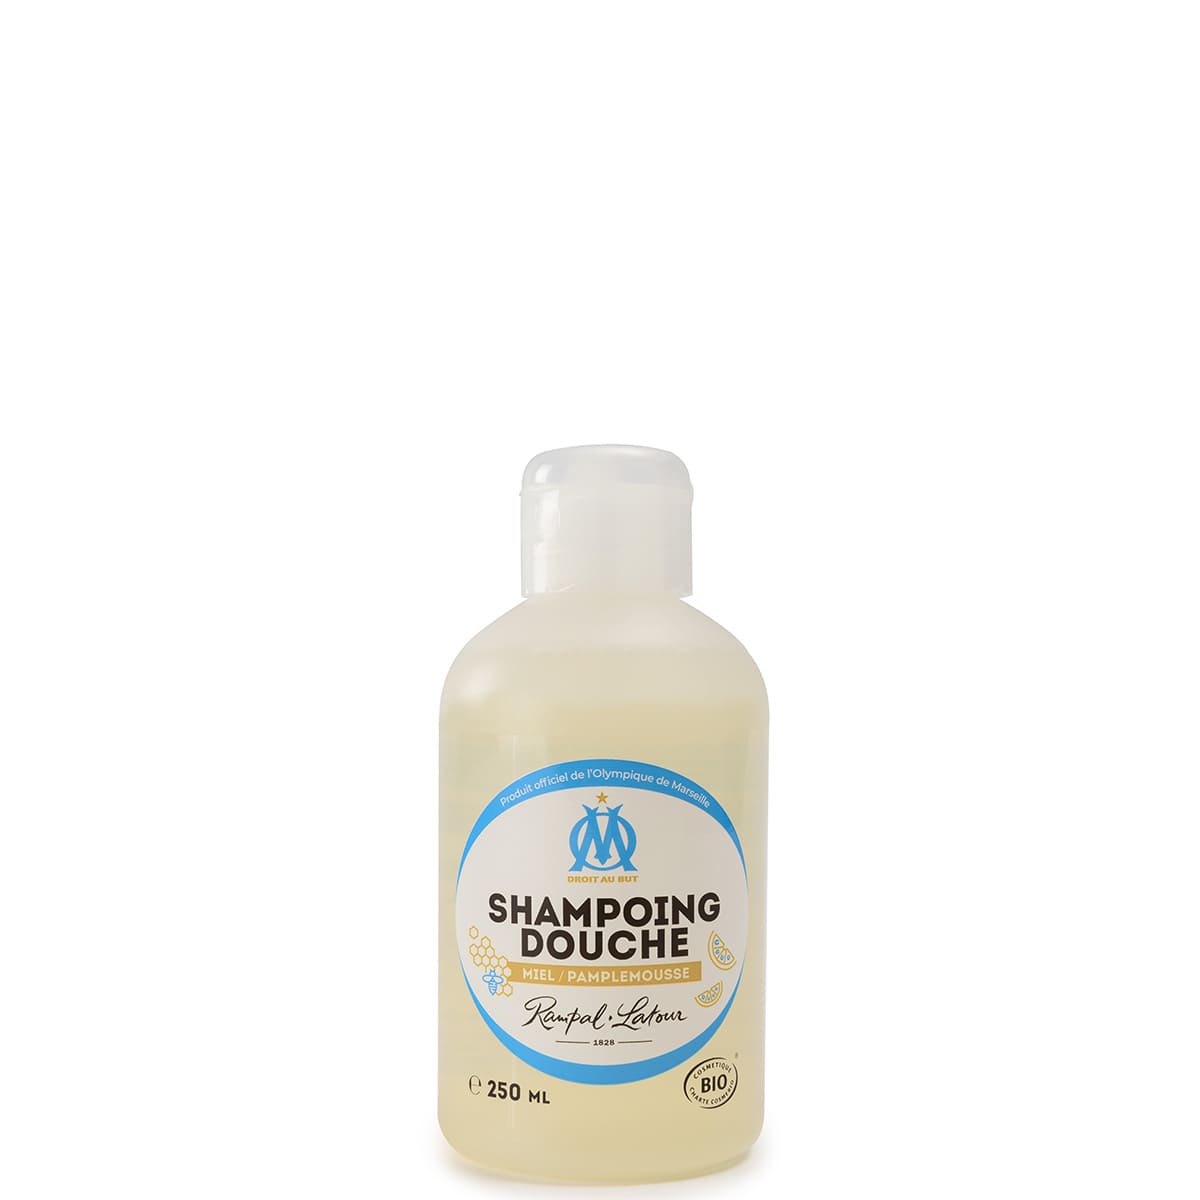 Shampoing douche certifié bio Pamplemousse 250ml - Olympique de Marseille - Cosmétique Bio Ecocert